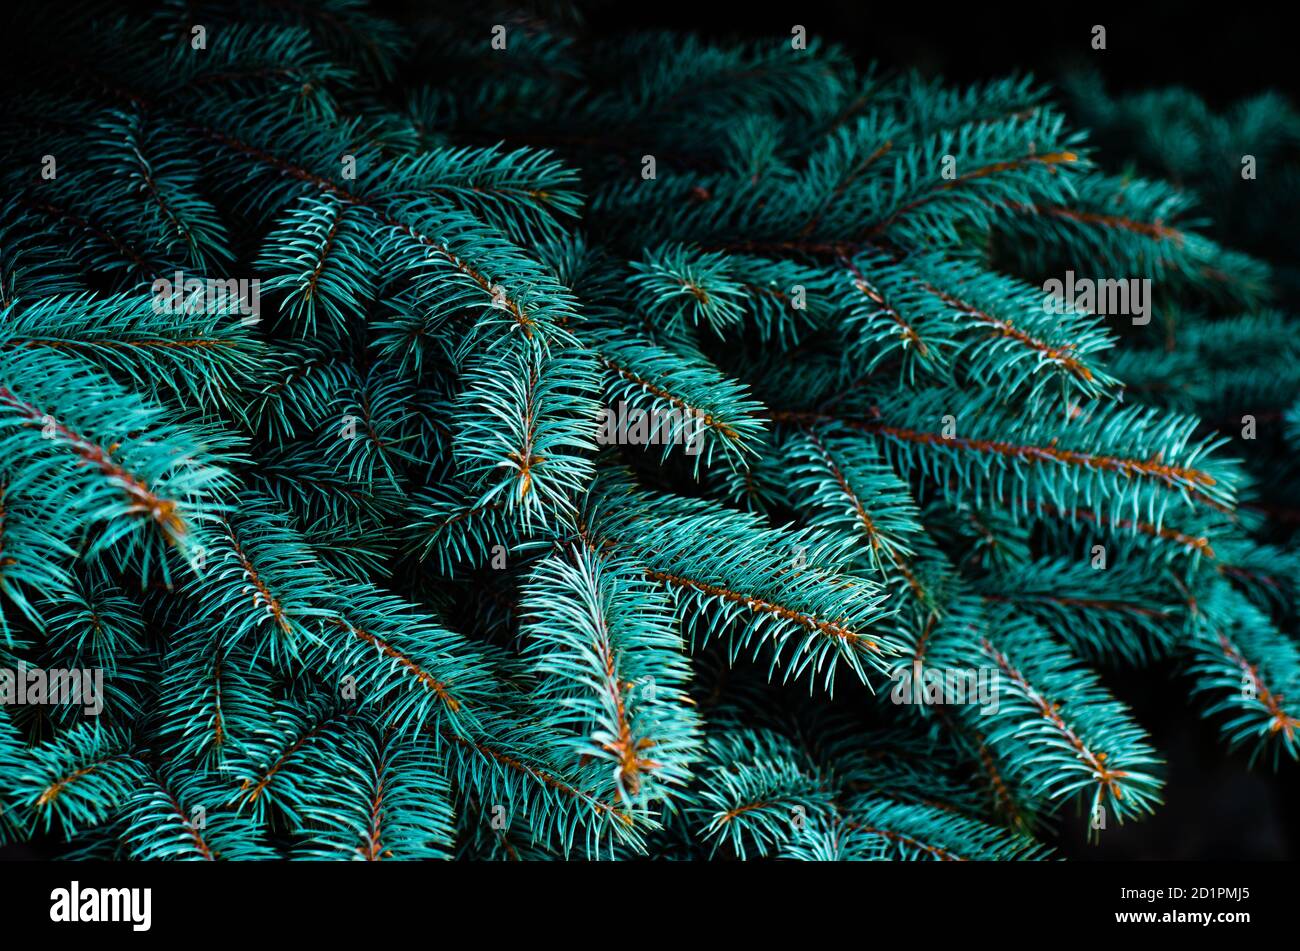 Fichtenzweige aus nächster Nähe. Weihnachtsbaum in der Natur. Schöner Fichtenzweig mit Nadeln. Blaue Fichte. Stockfoto